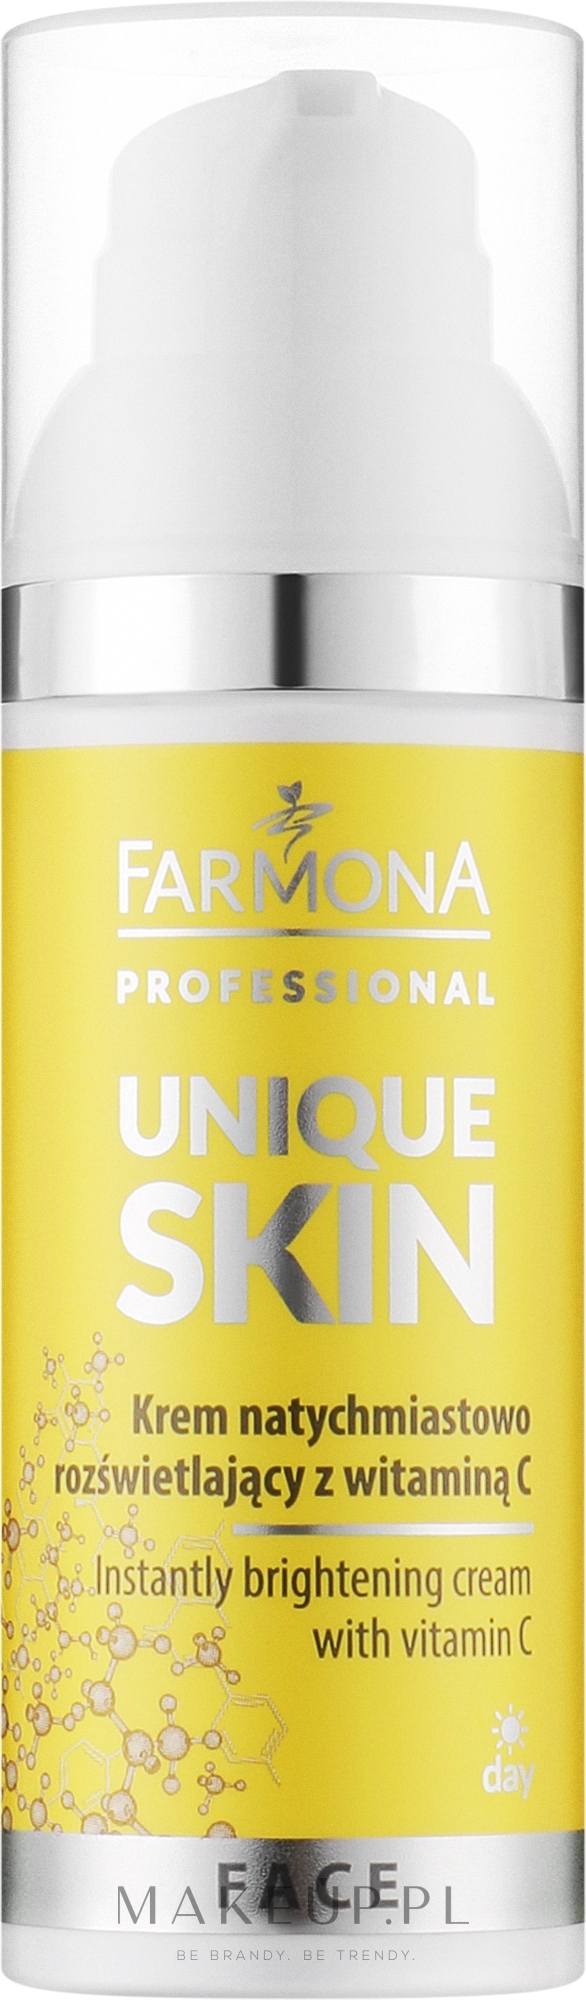 Krem rozjaśniający z Witaminą C - Farmona Professional Unique Skin Instantly Brightening Cream With Vitamin C — Zdjęcie 50 ml